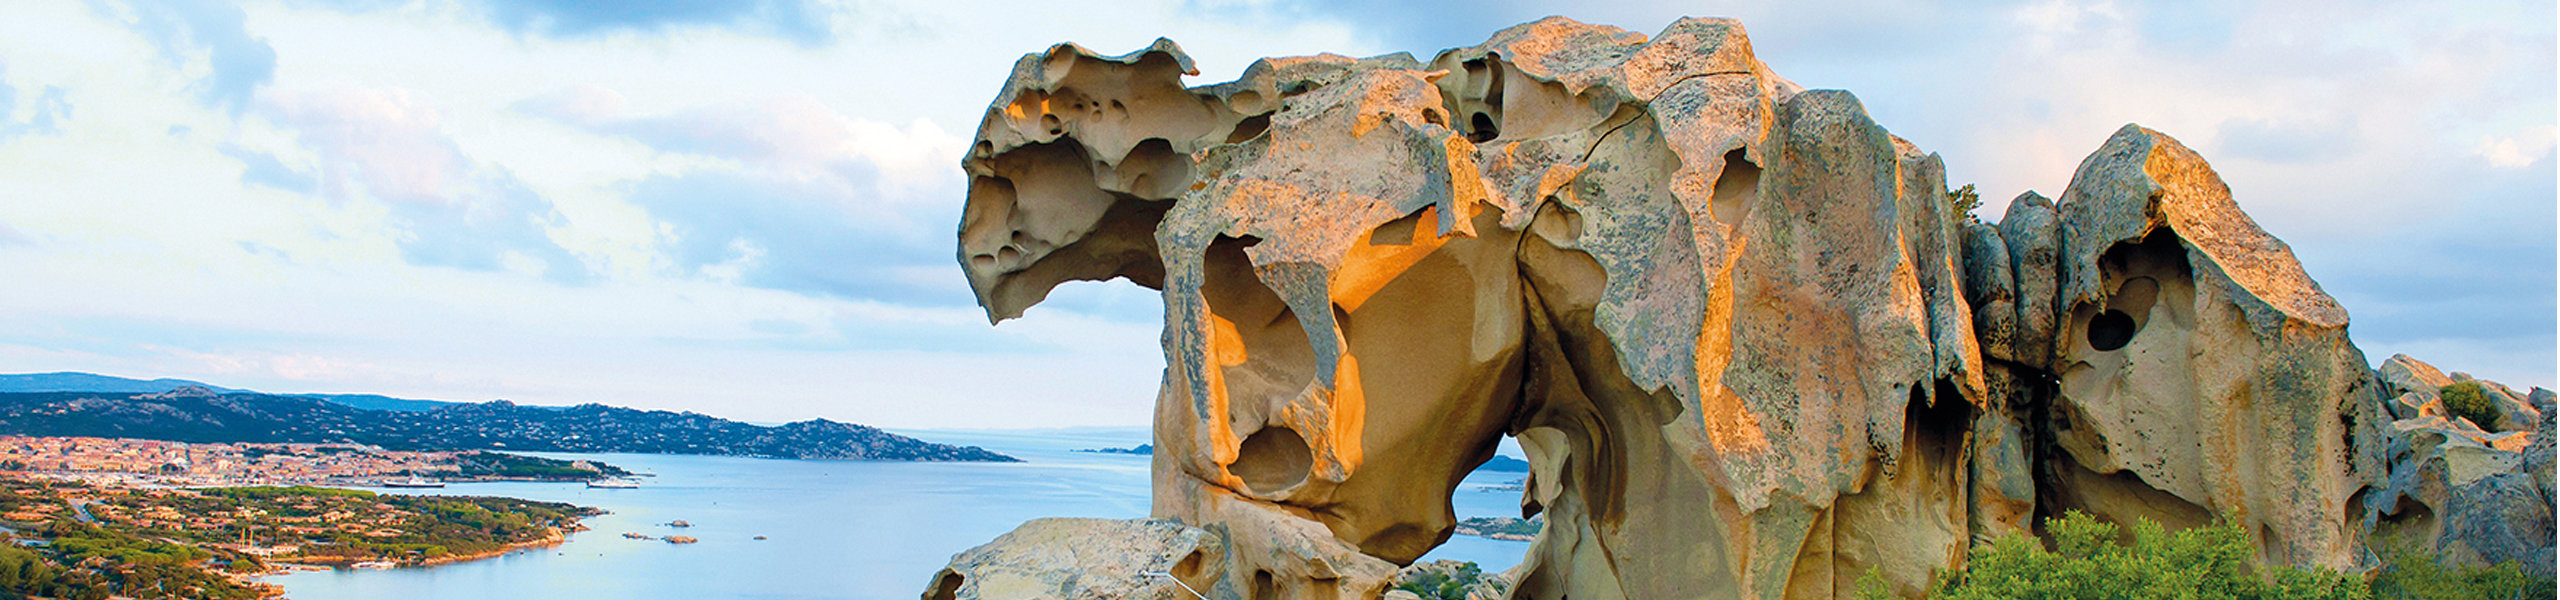 Blick auf den Capo d'Orso, ein Felsen in Form eines Bären in Nordsardinien